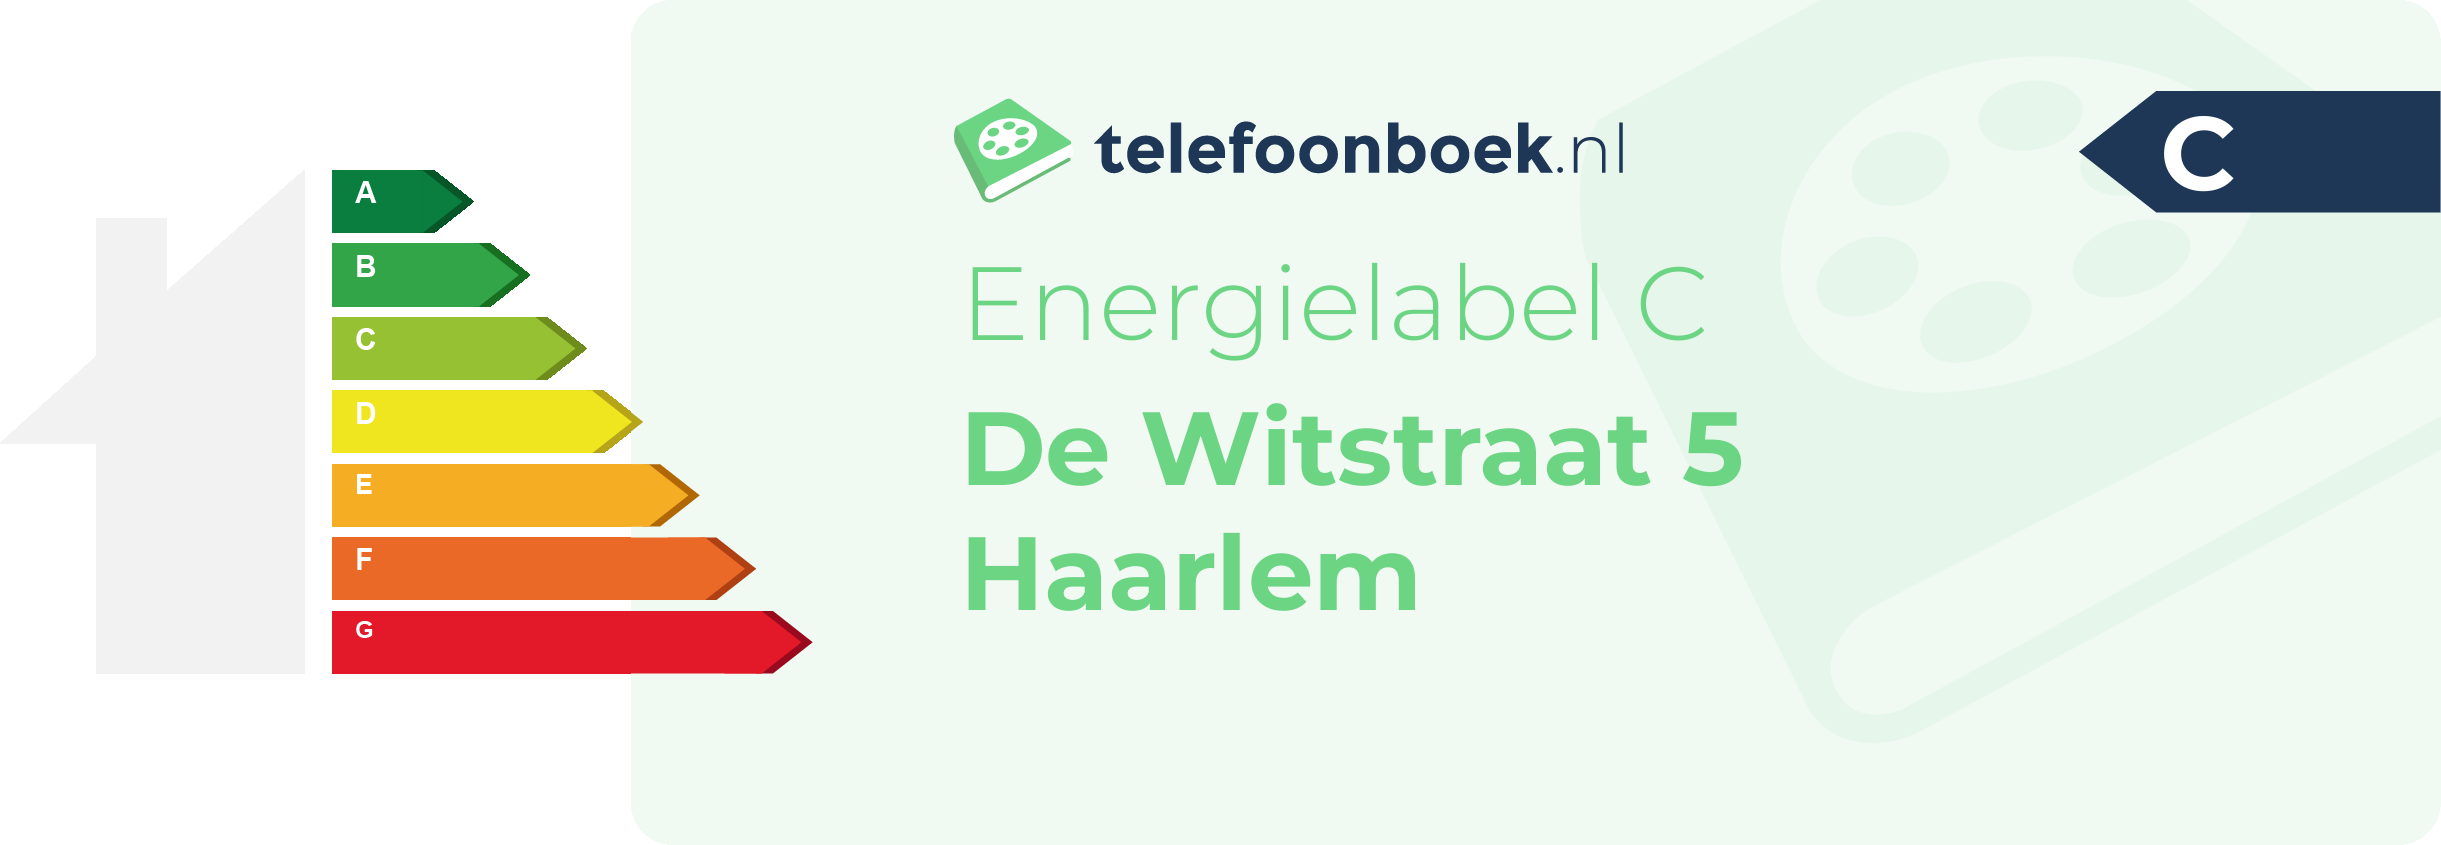 Energielabel De Witstraat 5 Haarlem